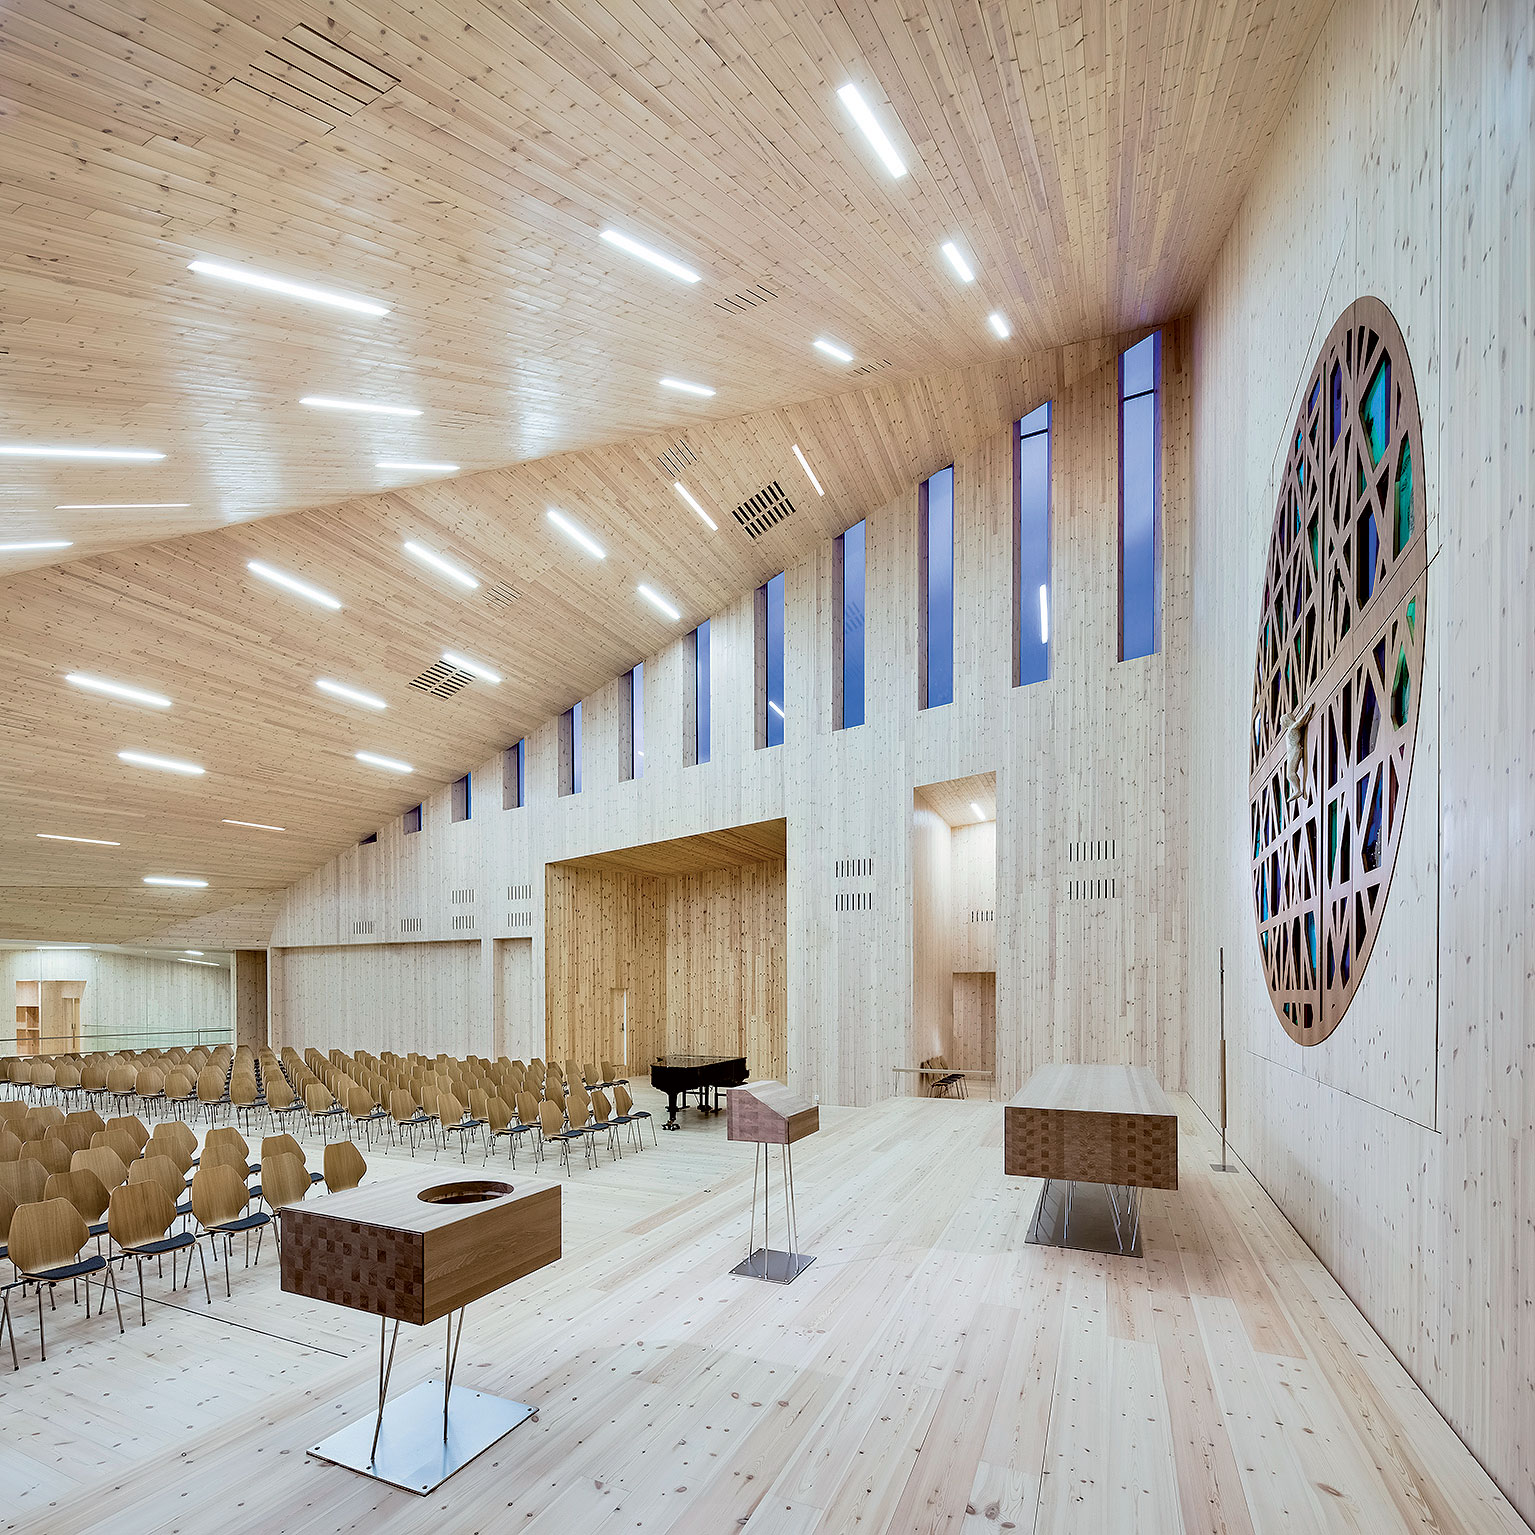 Kostel v Knarviku, Norsko (2014) Příklad moderní sakrální architektury: osvětlení interiéru umožňují štíhlá vysoká okna jako reminiscence na elegantní gotická okna v moderním pojetí.   Architekt: Reiulf Ramstad Arkitekter Foto: Hundven-Clements